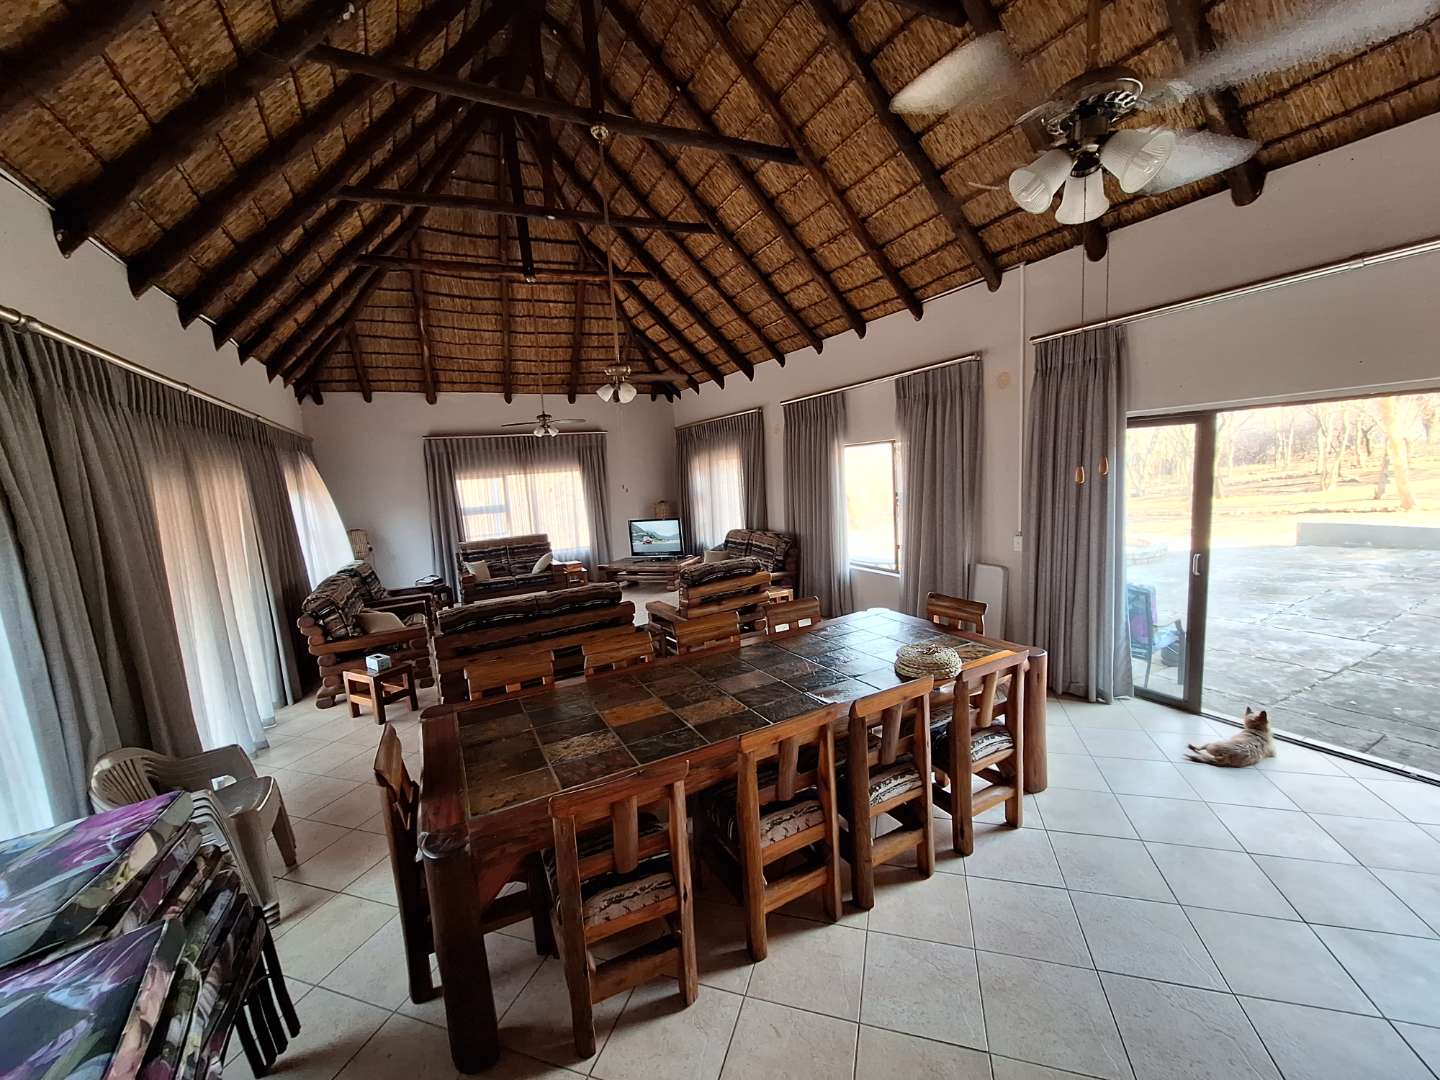 9 Bedroom Property for Sale in Koedoeskop Limpopo